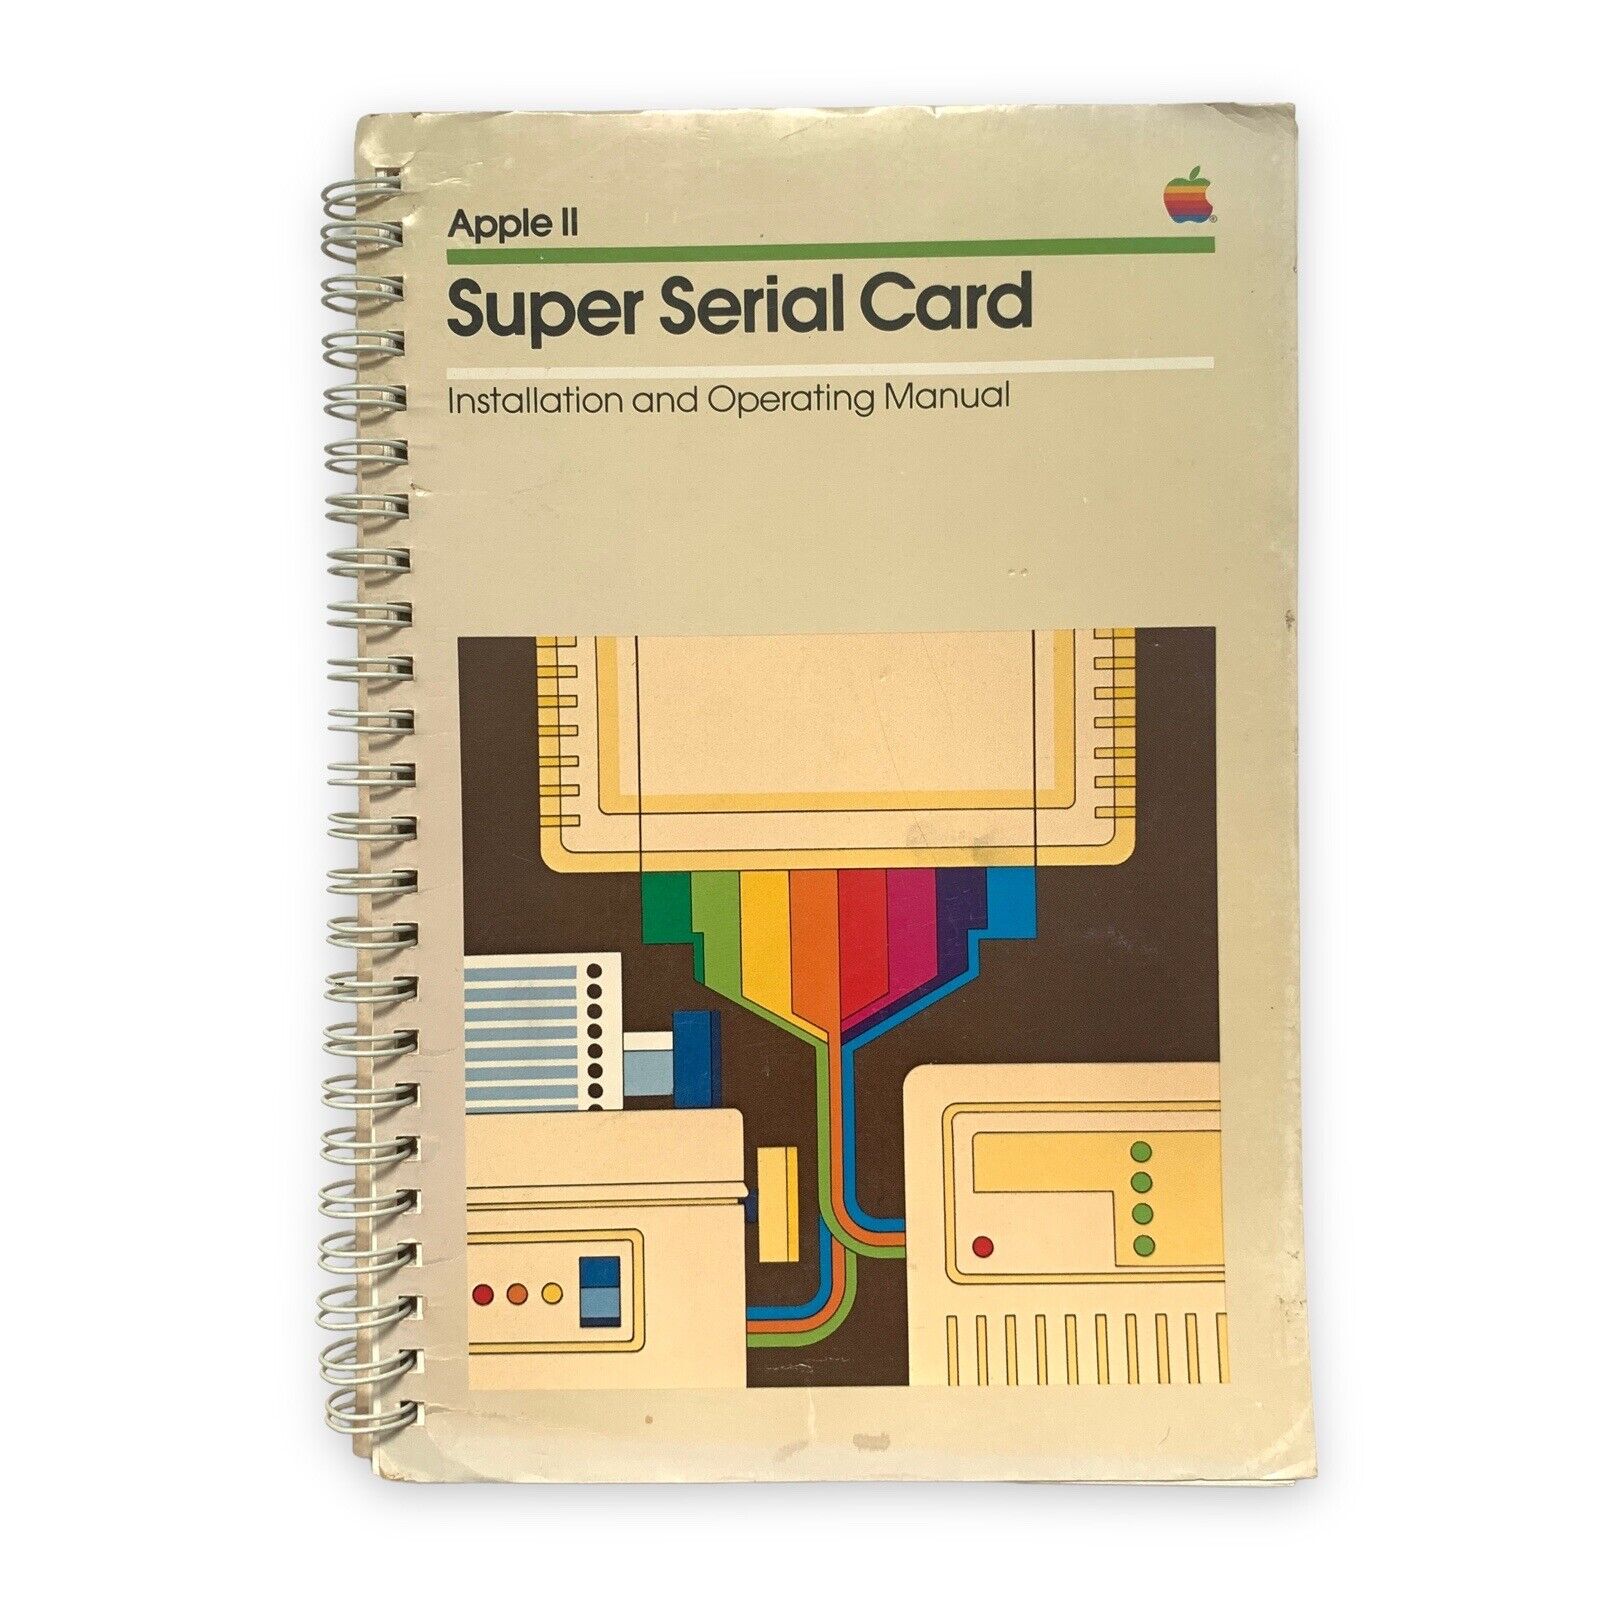 Apple II Super Serial Card Installation & Operating Manual VTG 1981 